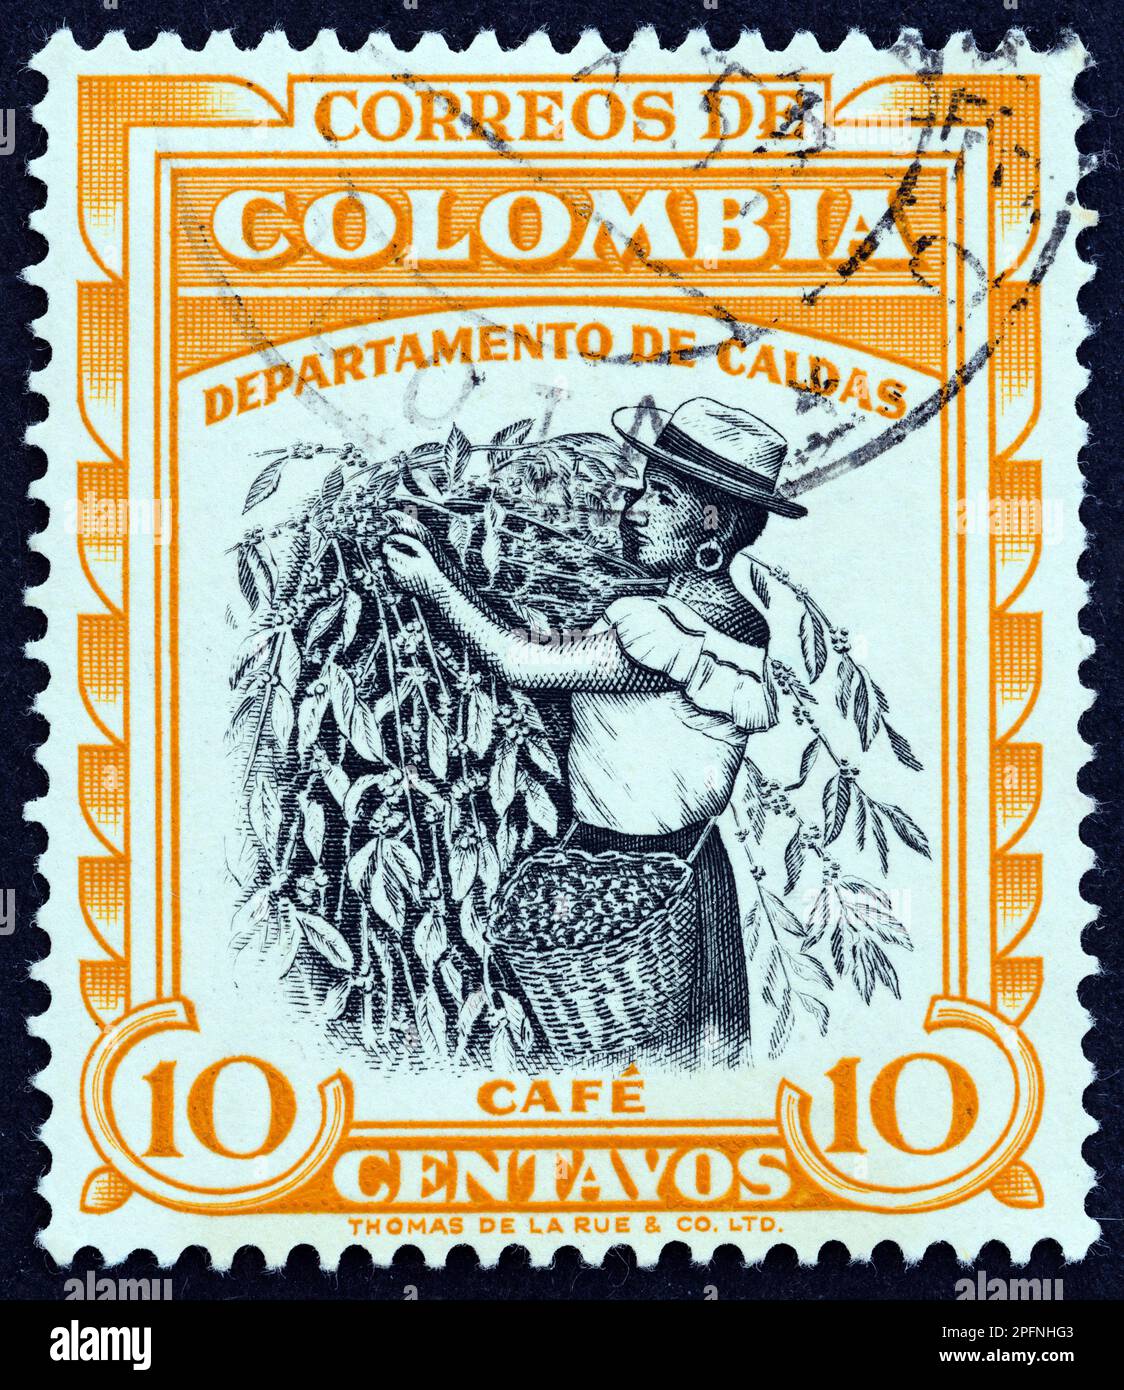 KOLUMBIEN - CIRCA 1956: Ein in Kolumbien gedruckter Stempel aus der Ausgabe "Regional Industries" zeigt Coffee, Caldas, circa 1956. Stockfoto